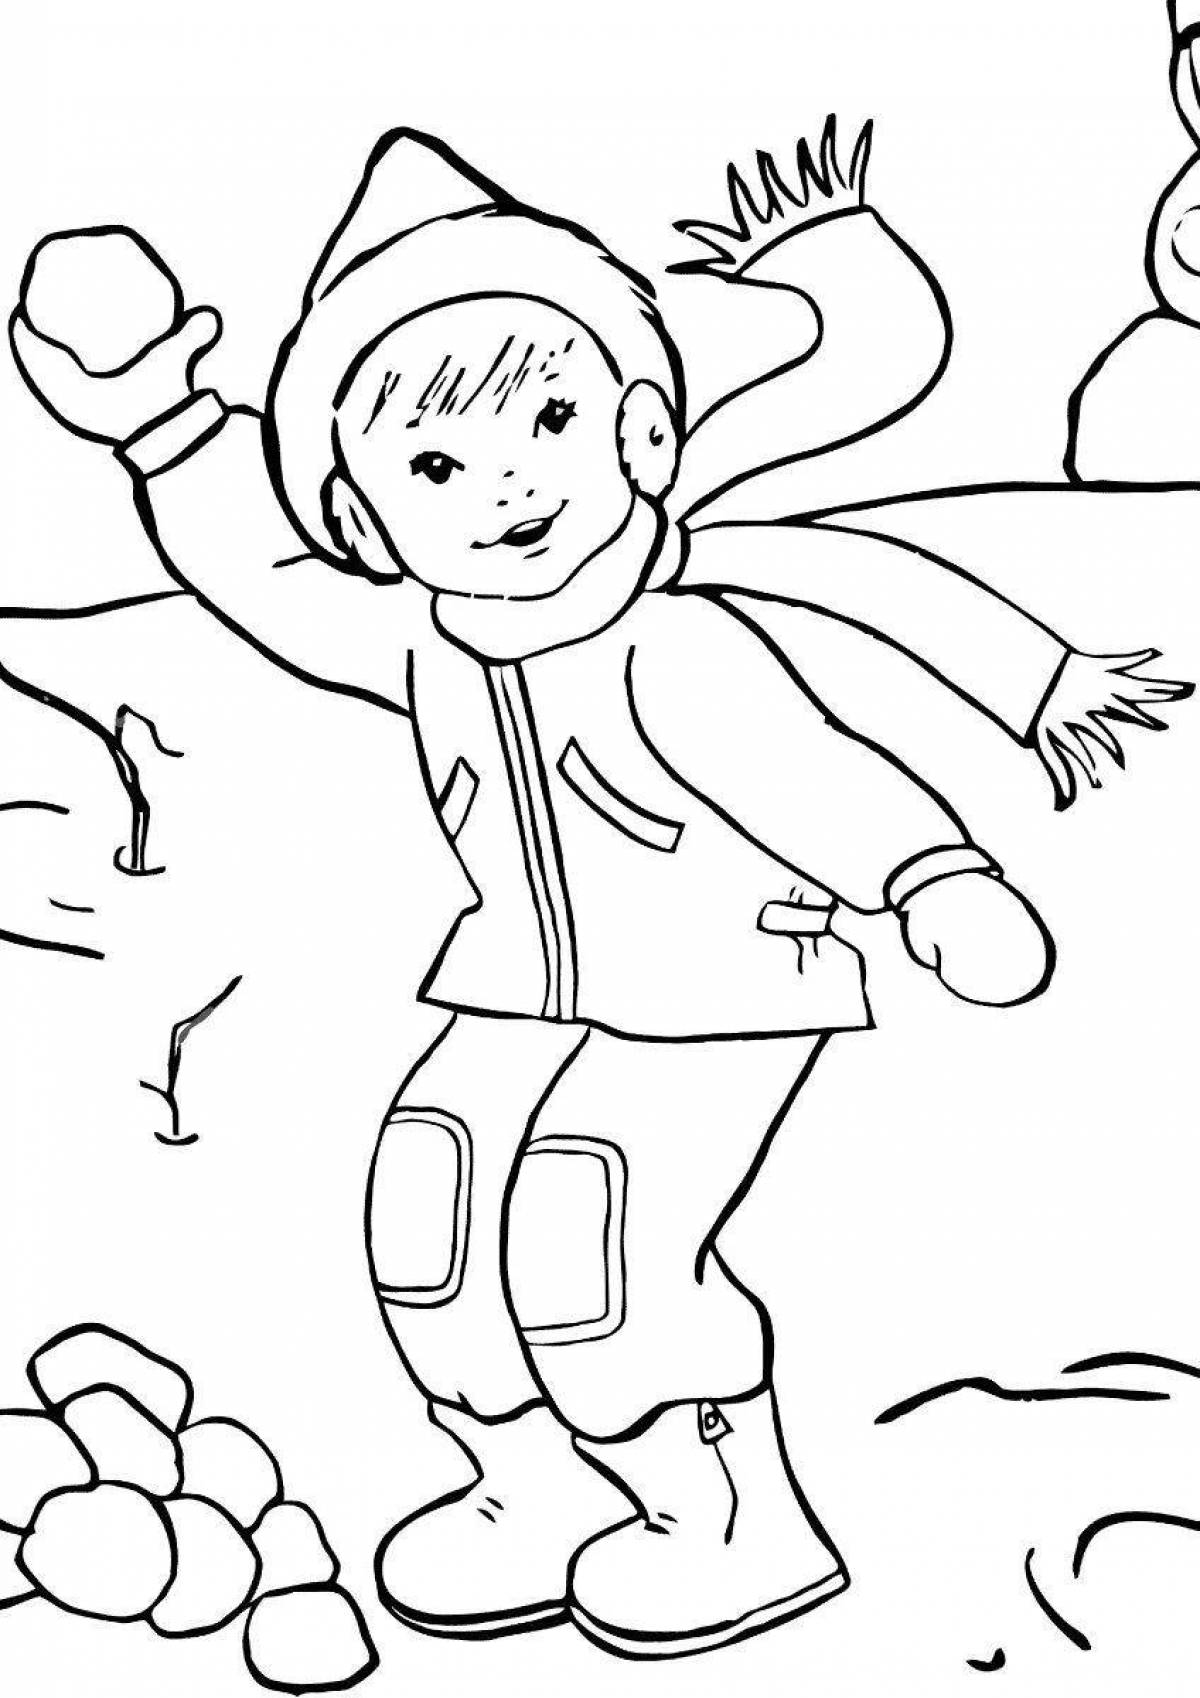 Радостная раскраска для детей мальчик в зимней одежде